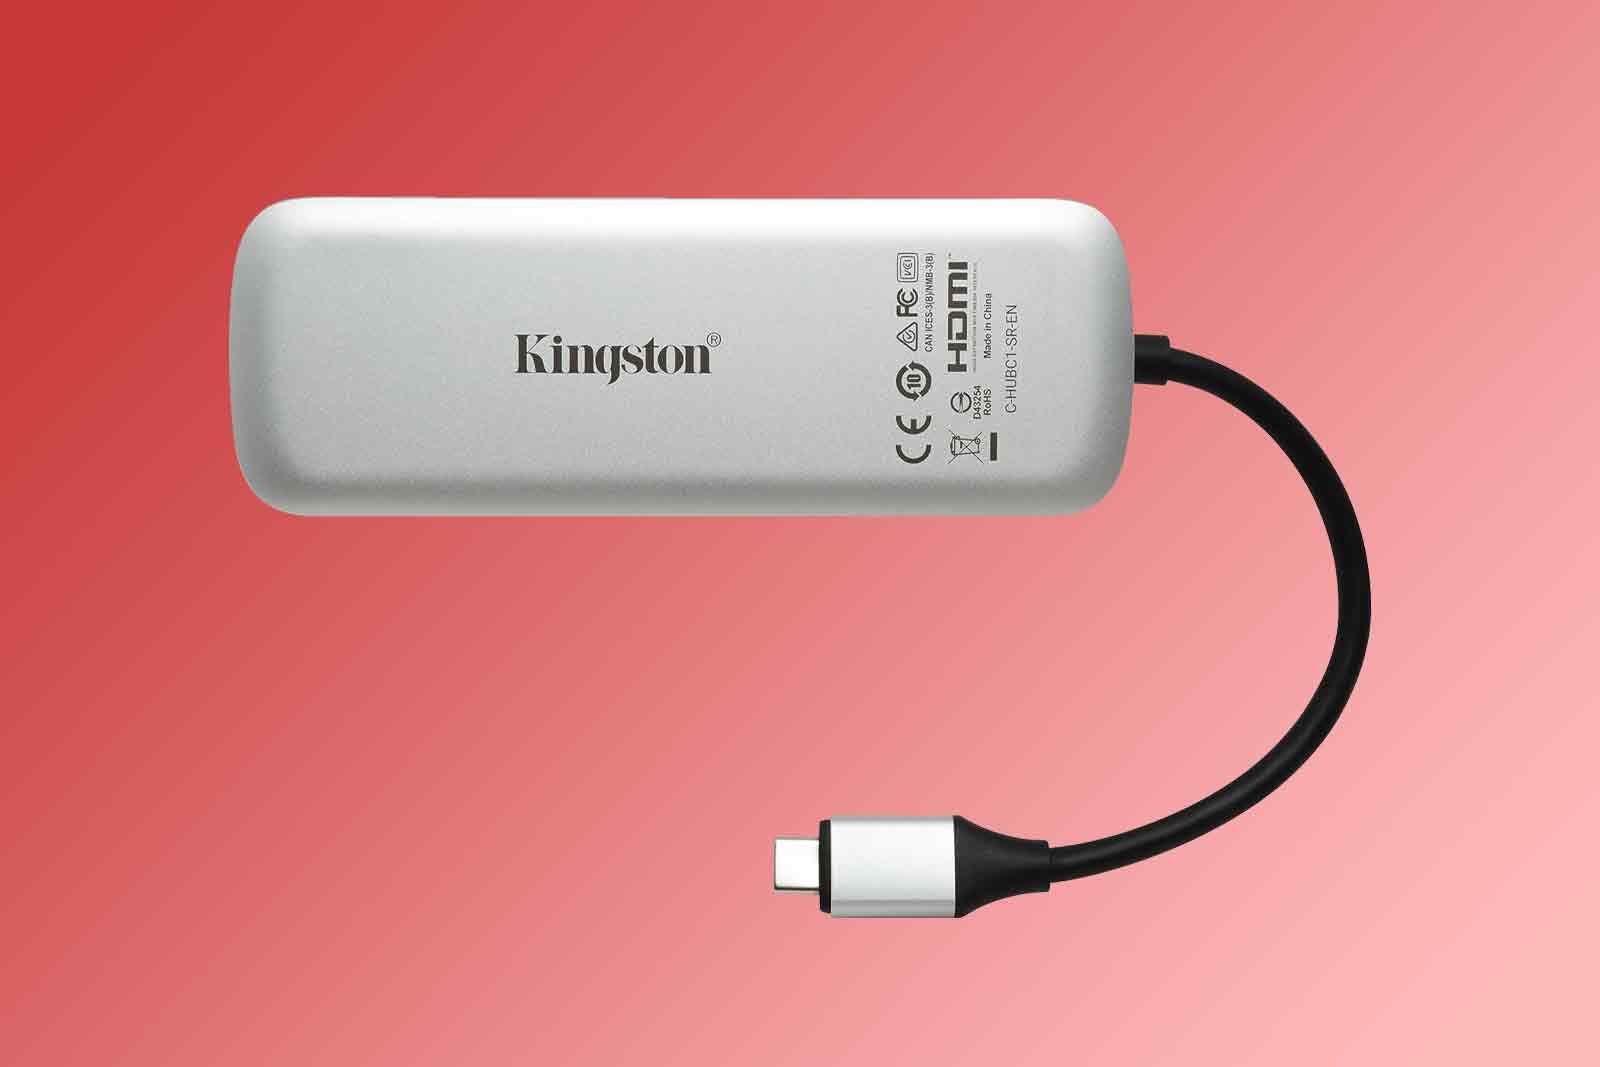 Kingston USB-C hub